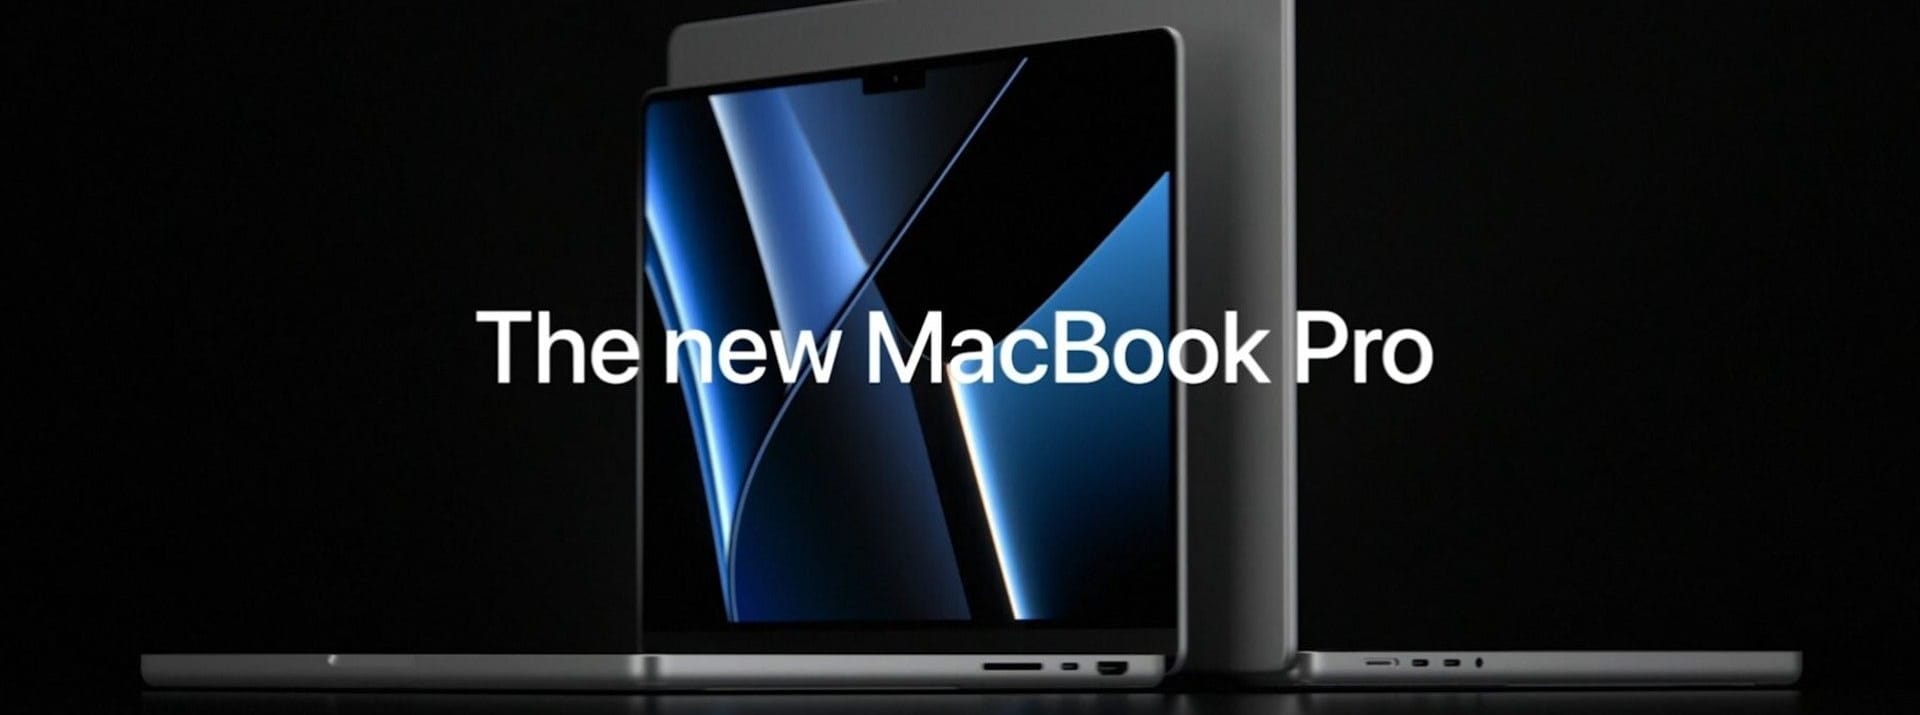 Das neue MacBook Pro von Apple ist in zwei Größen erhältlich.